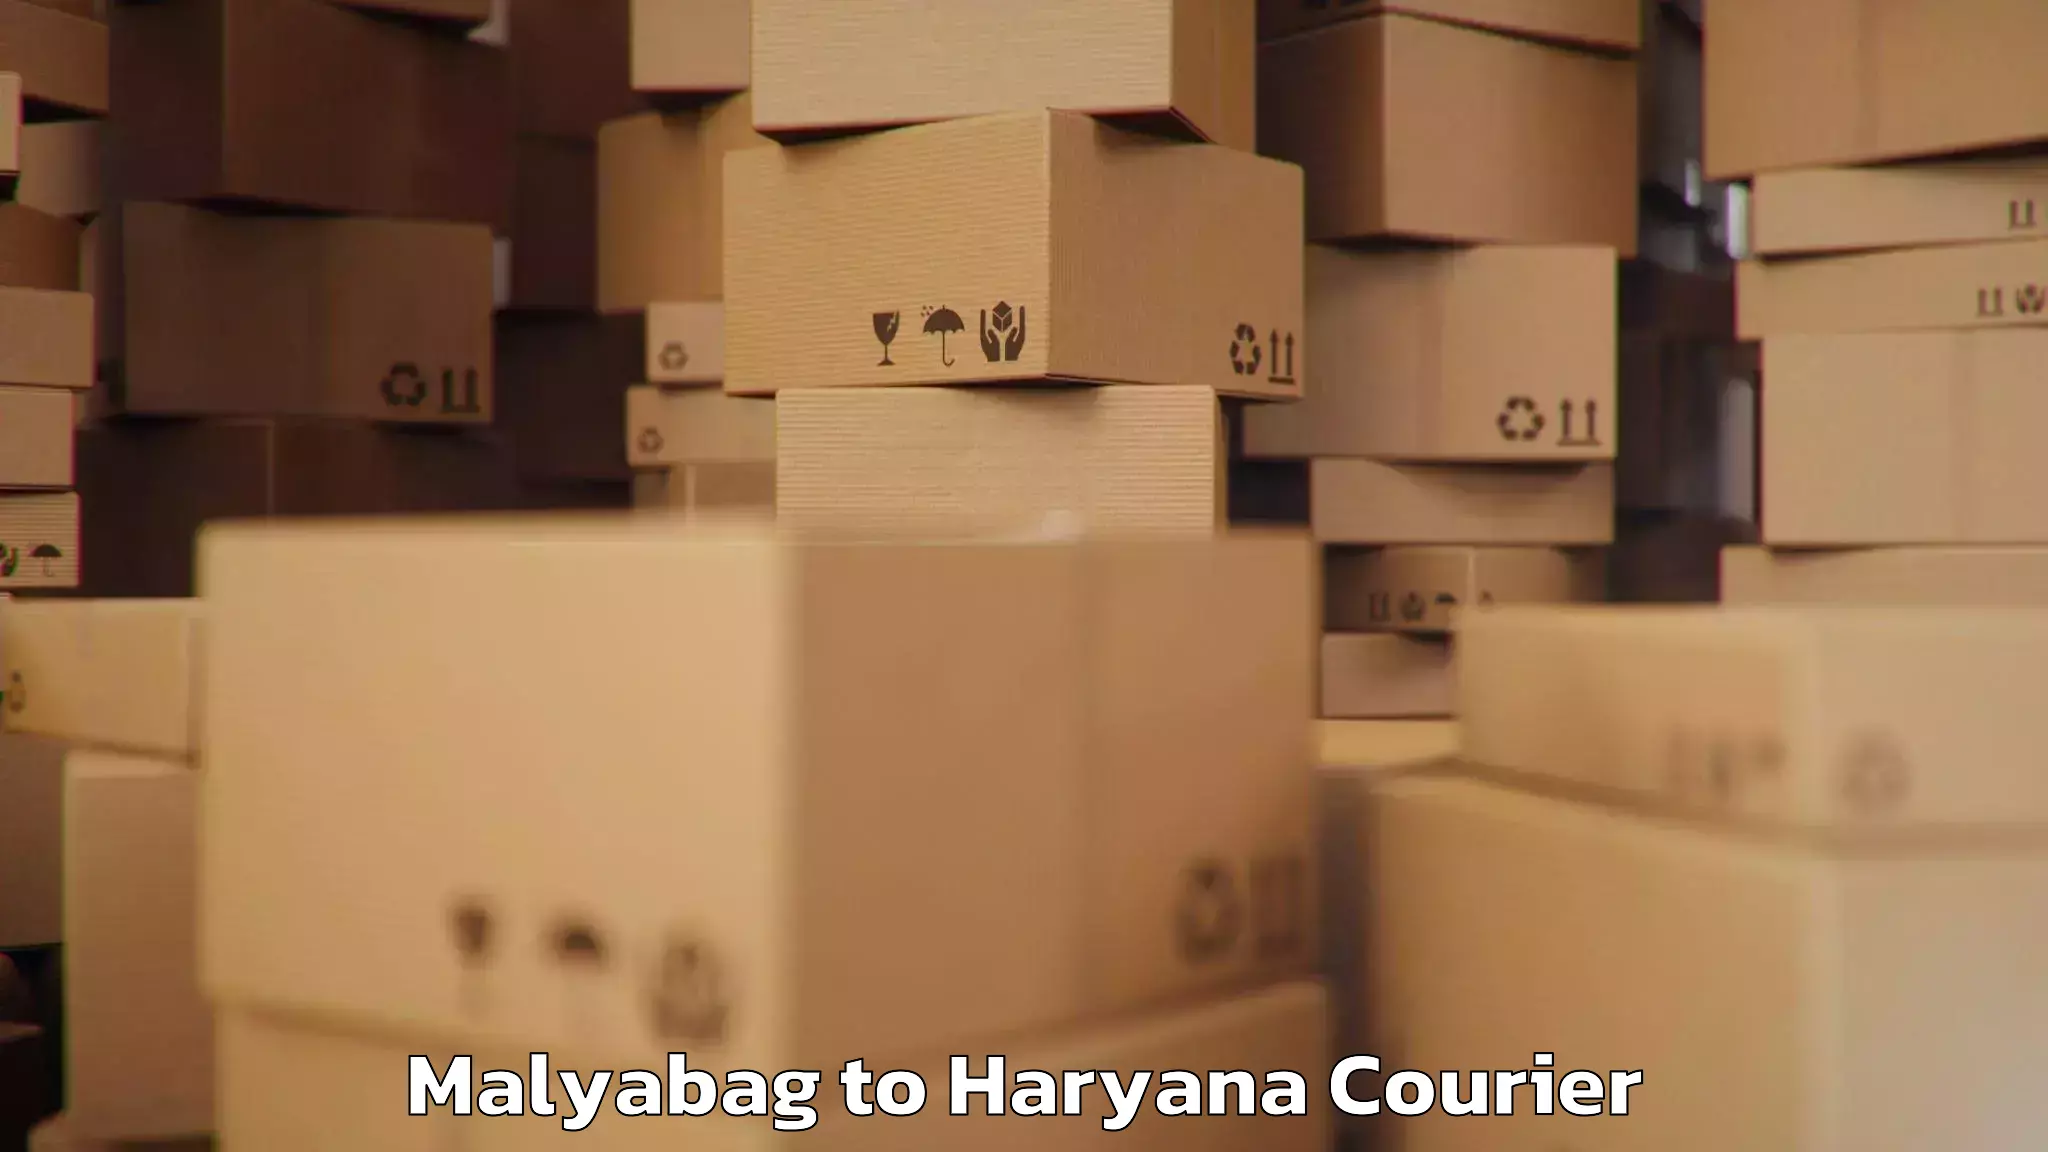 Luggage shipment tracking Malyabag to Chaudhary Charan Singh Haryana Agricultural University Hisar